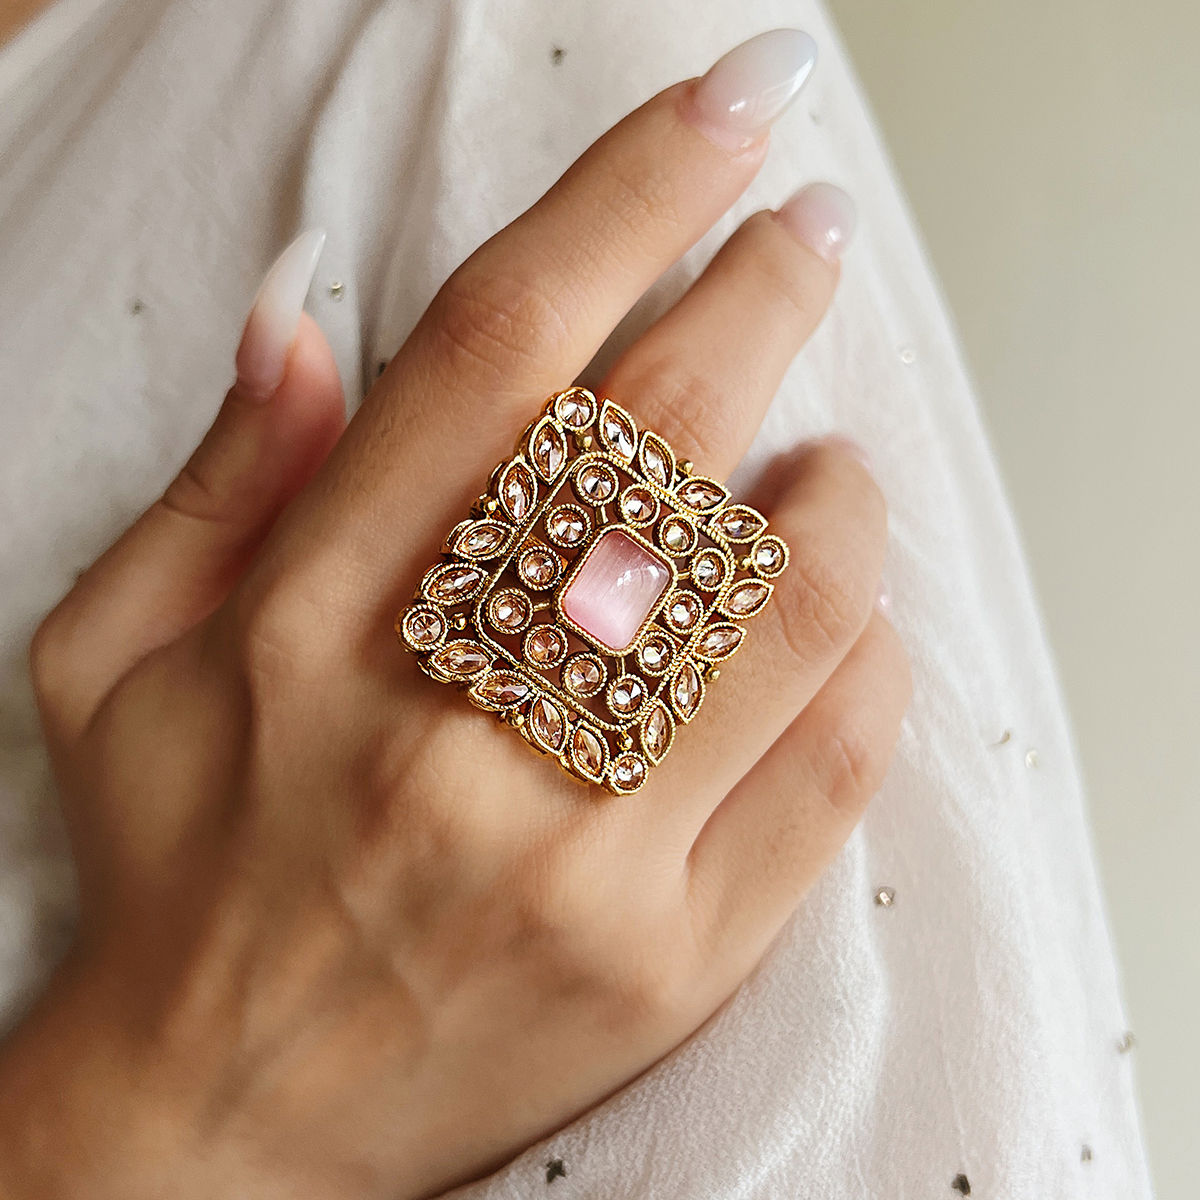 7 Fancy Gold Rings Design For Girls - Tradeindia